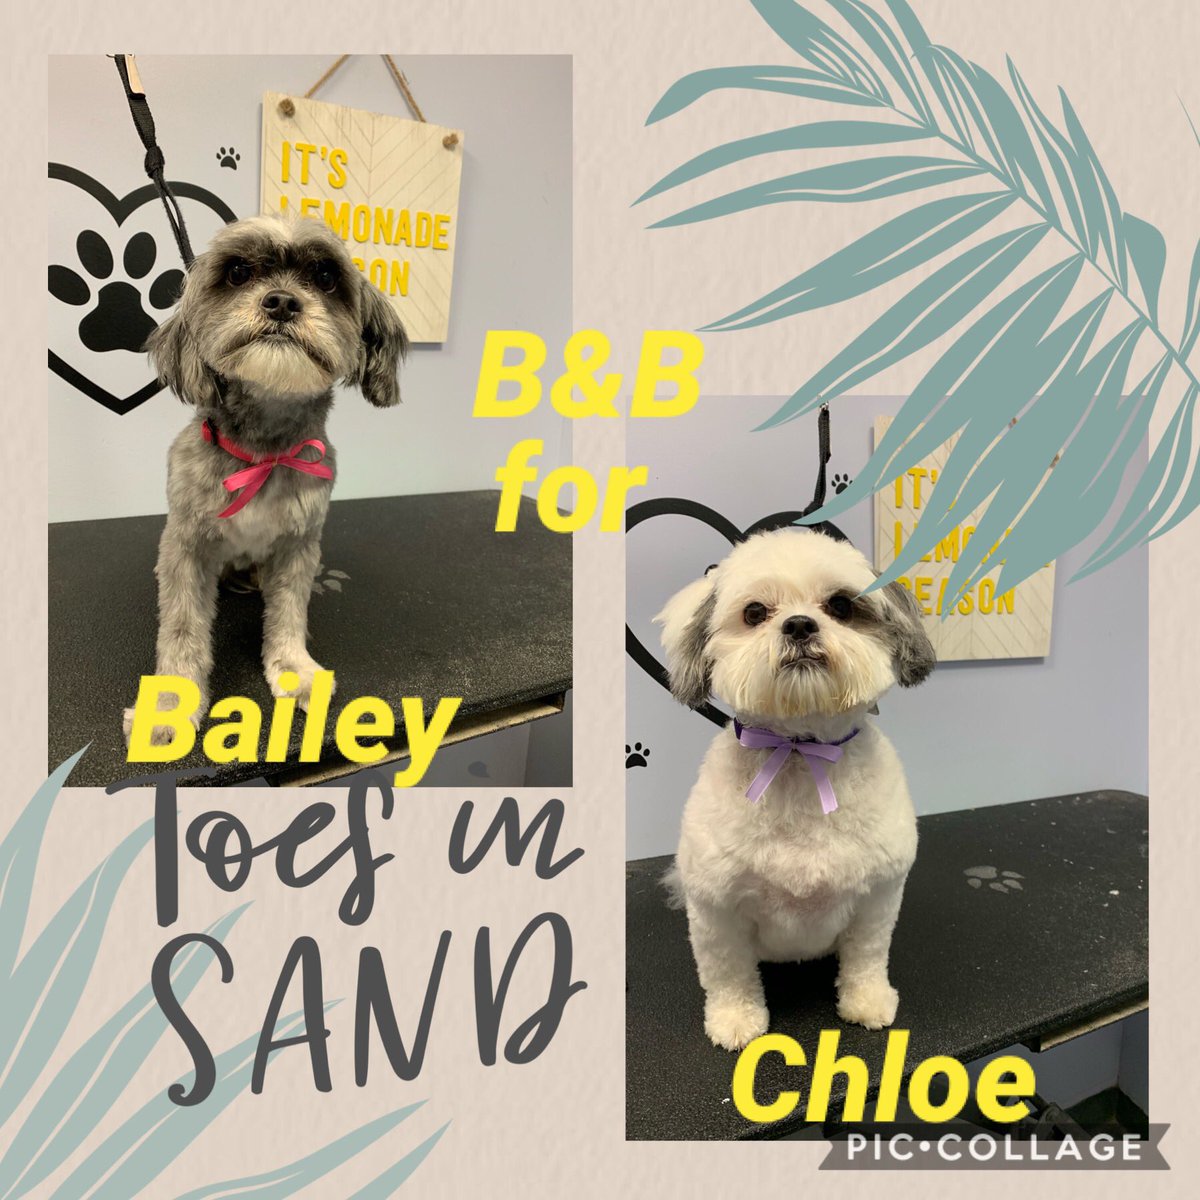 Bailey&Chloe
#buddys. #siblinglove smalldoglove.